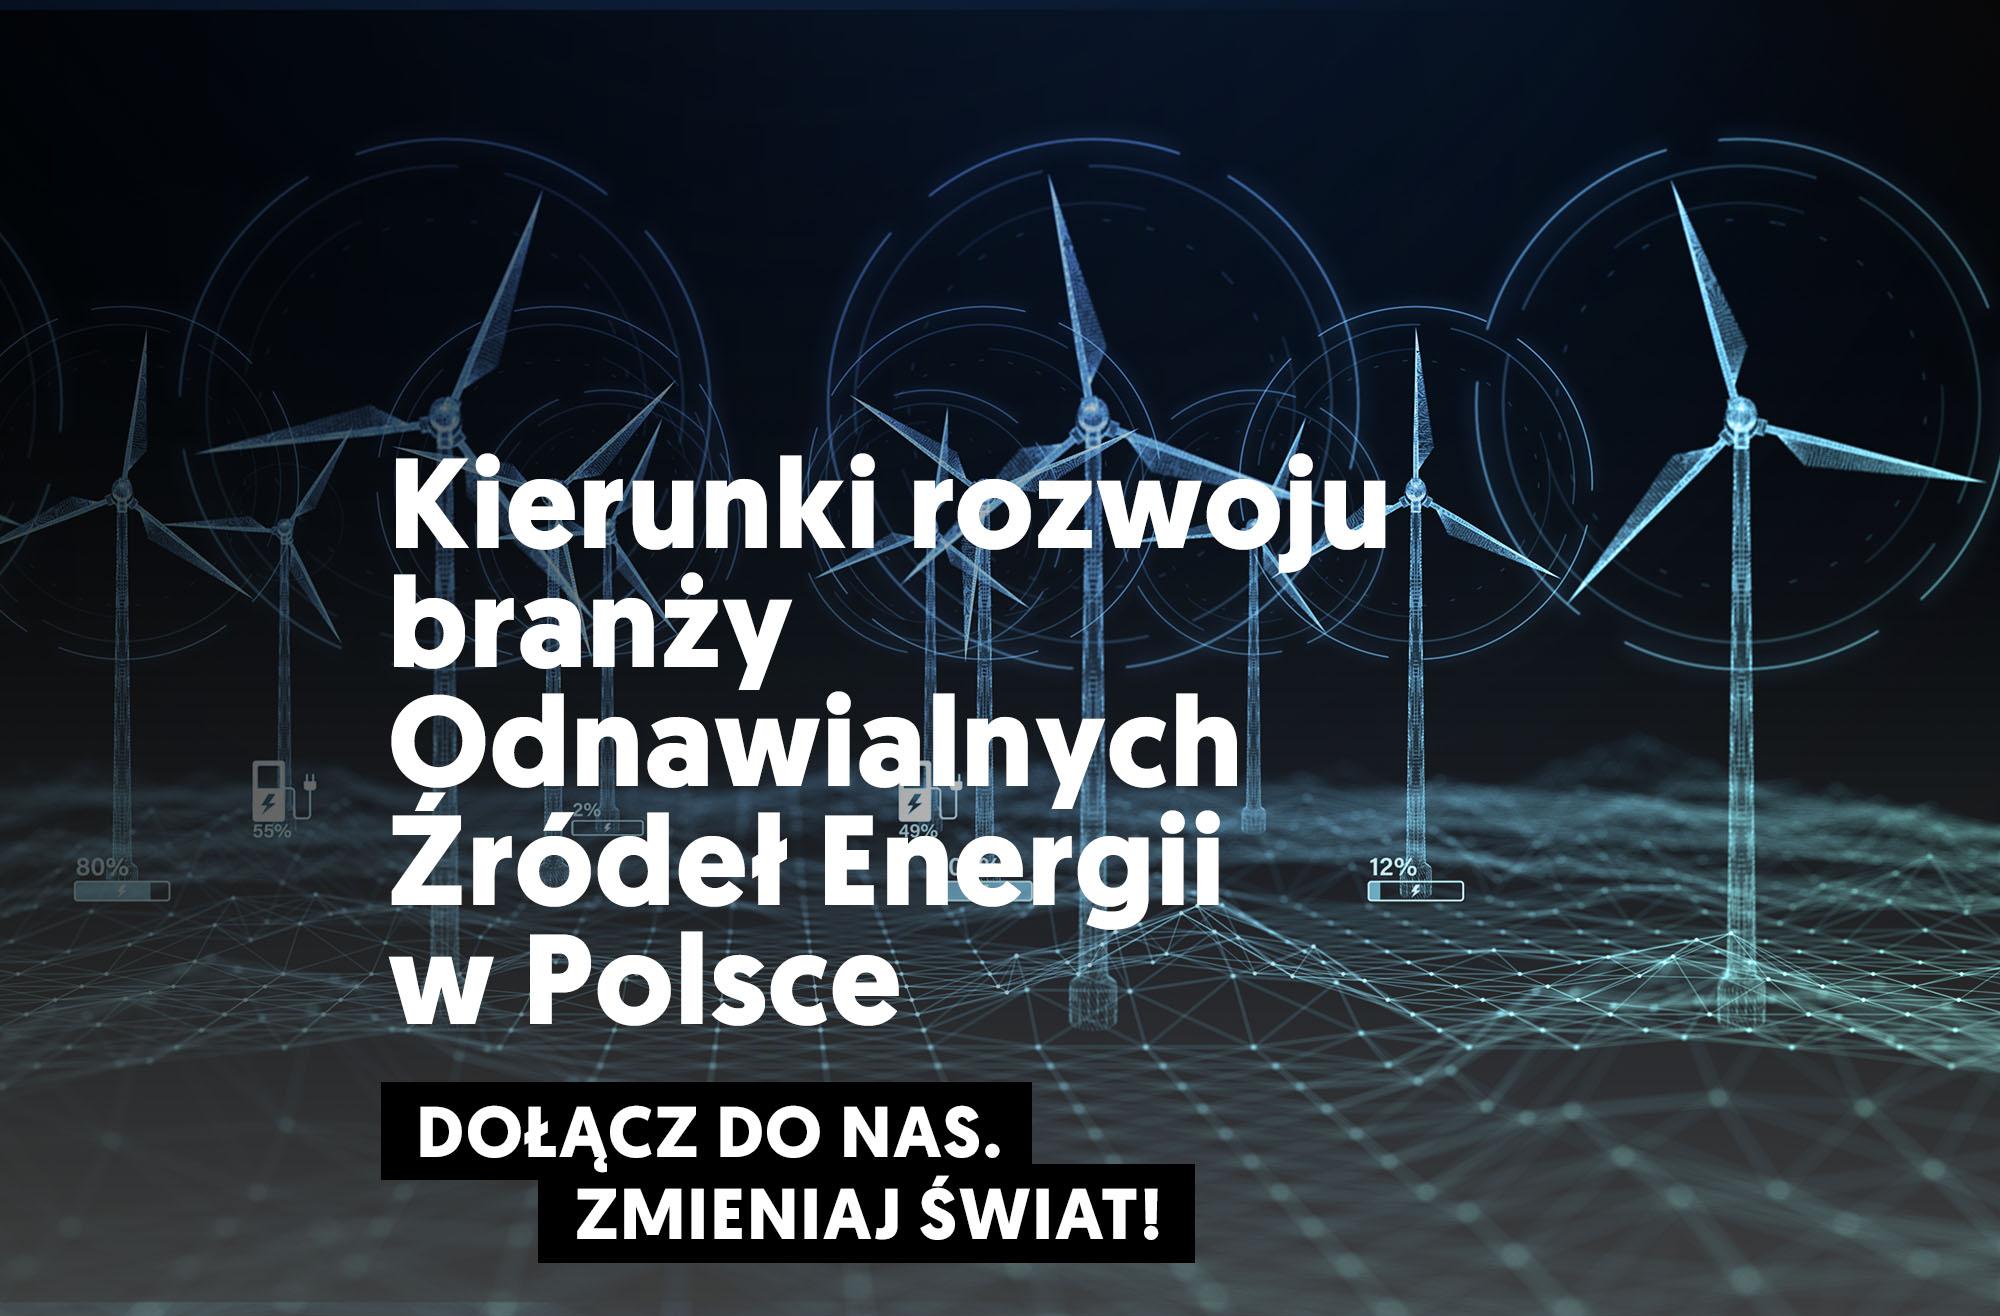 Kierunki rozwoju branży Odnawialnych Źródeł Energii w Polsce 